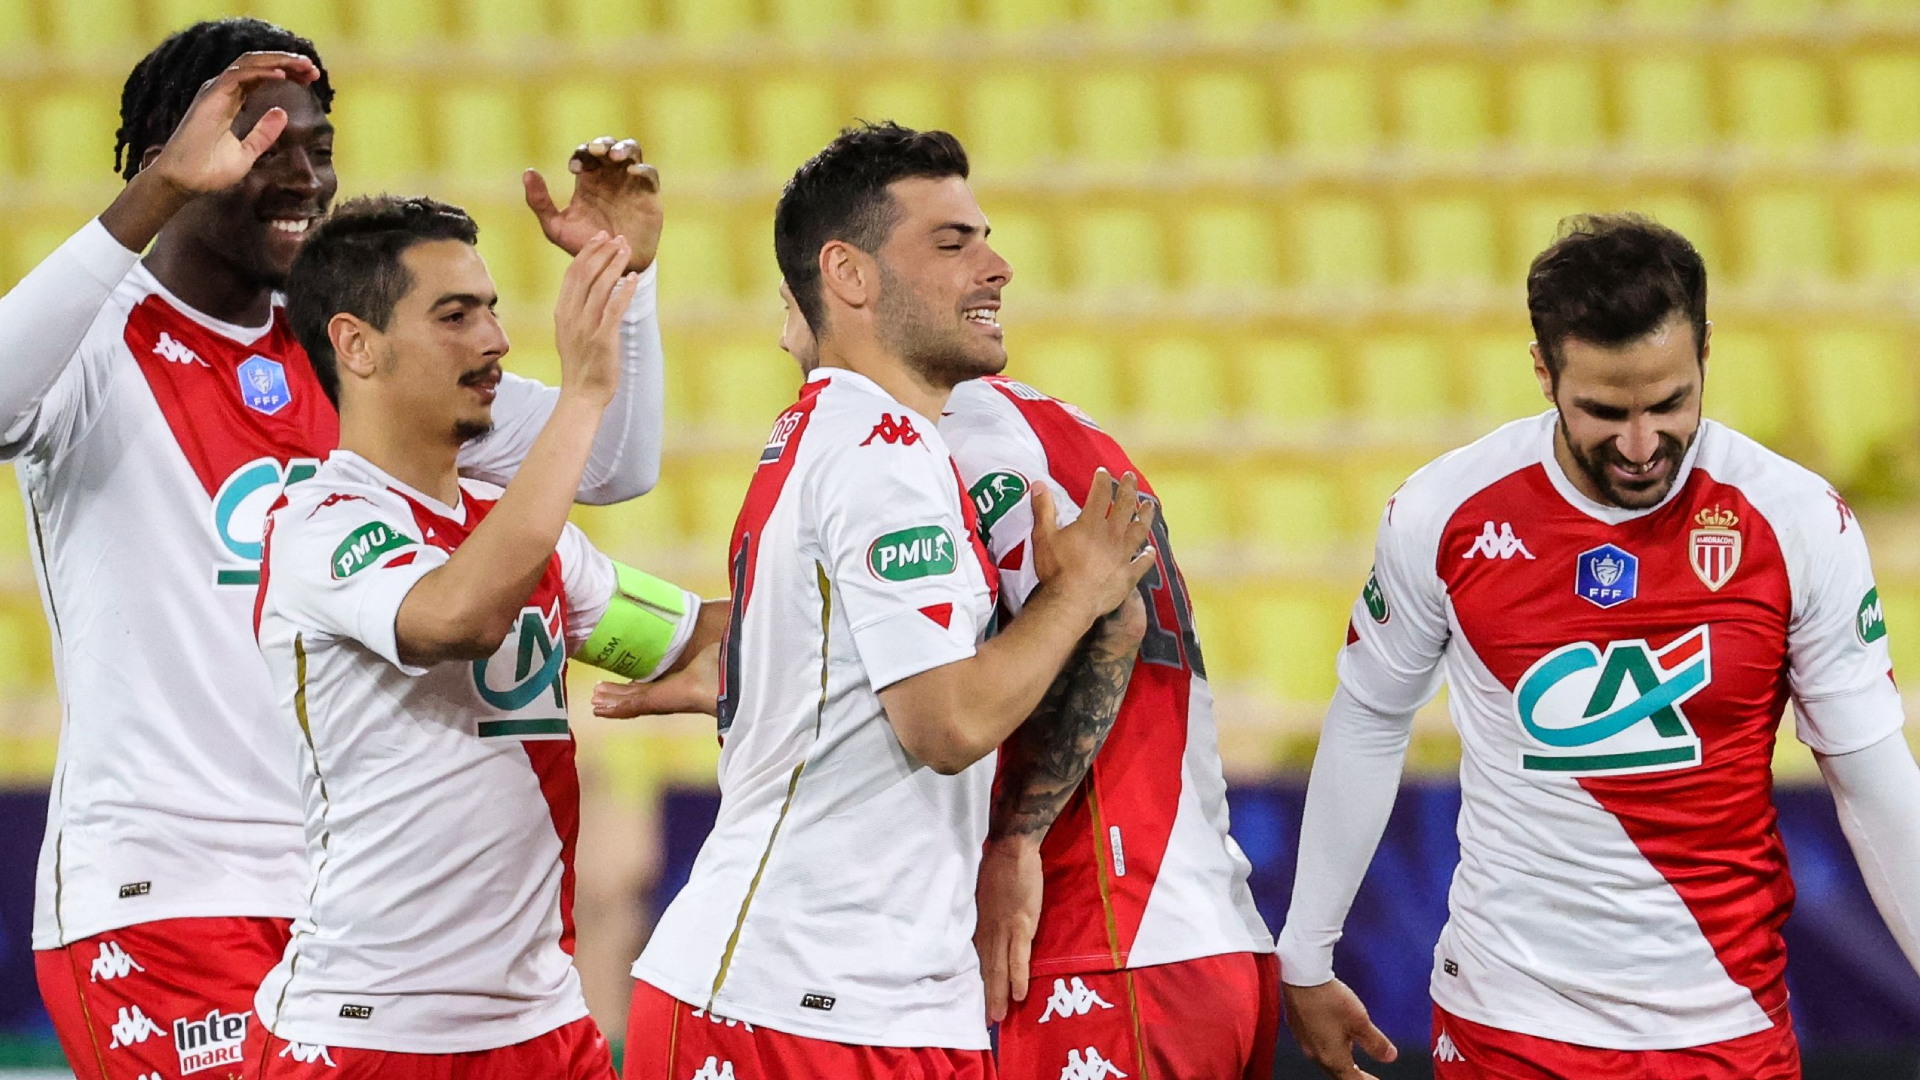 Coupe de France - Monaco élimine Metz et rêve toujours du doublé